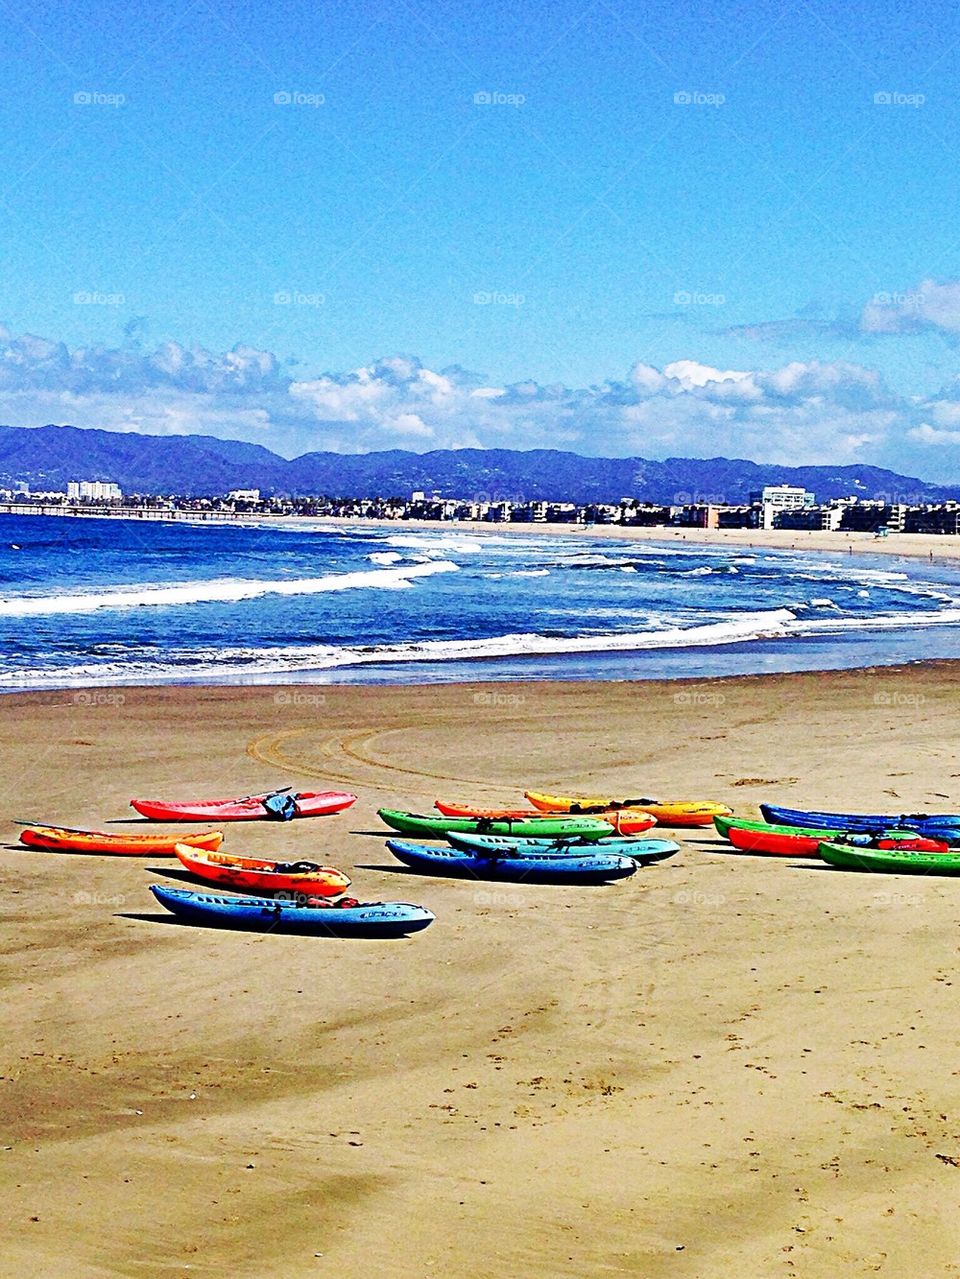 Canoes on the beach